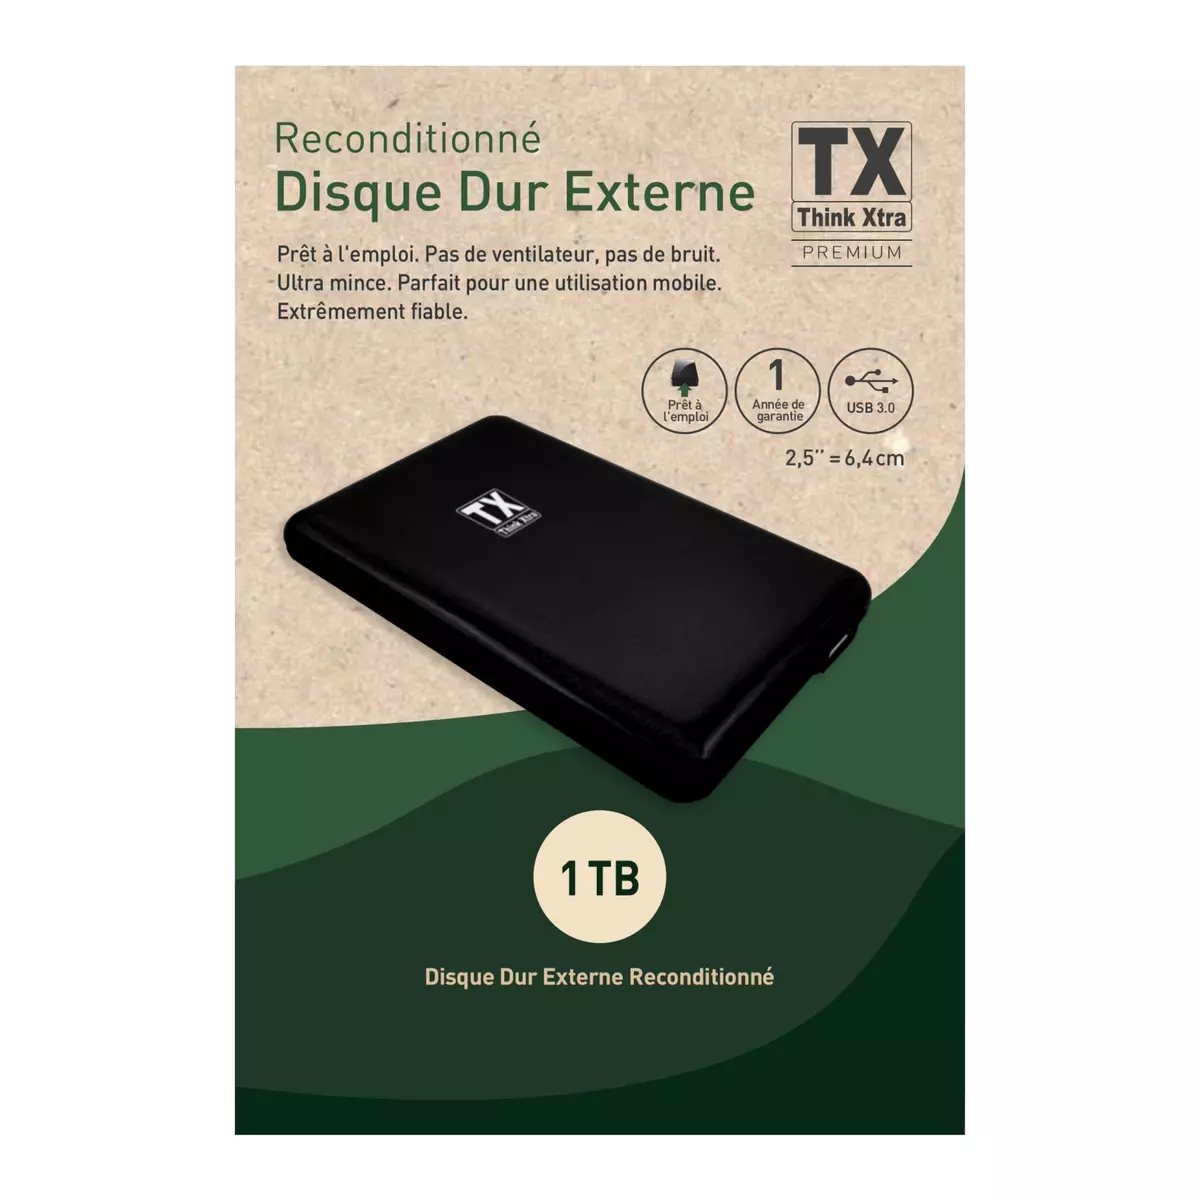 TX Disque dur externe reconditionné 1 TO USB 3.0 - Noir pas cher 